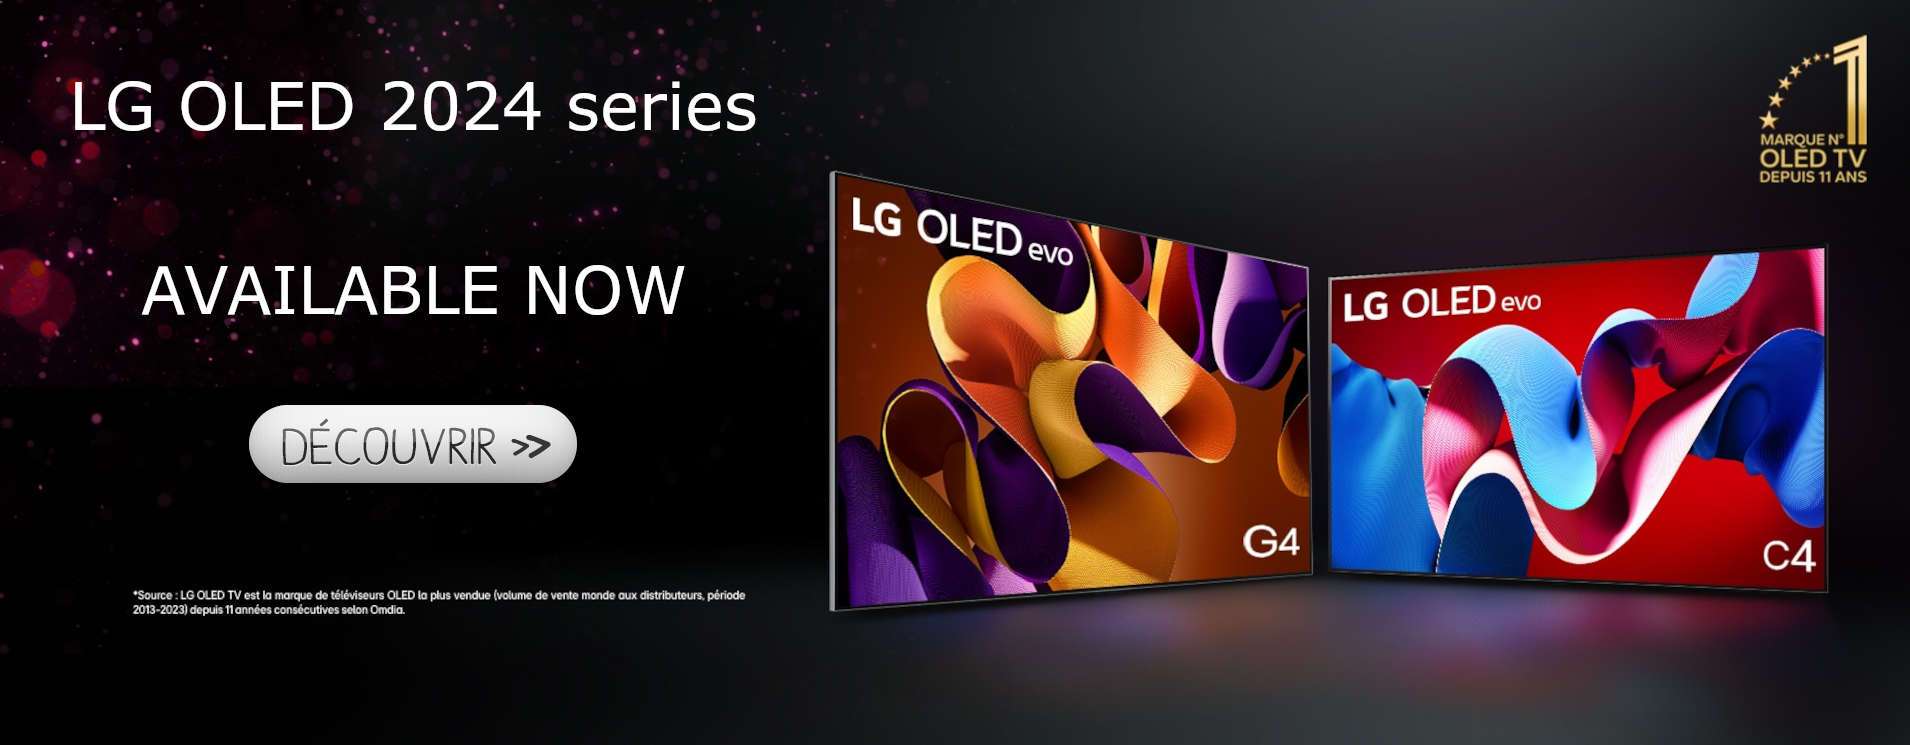 LG OLED 2024 series